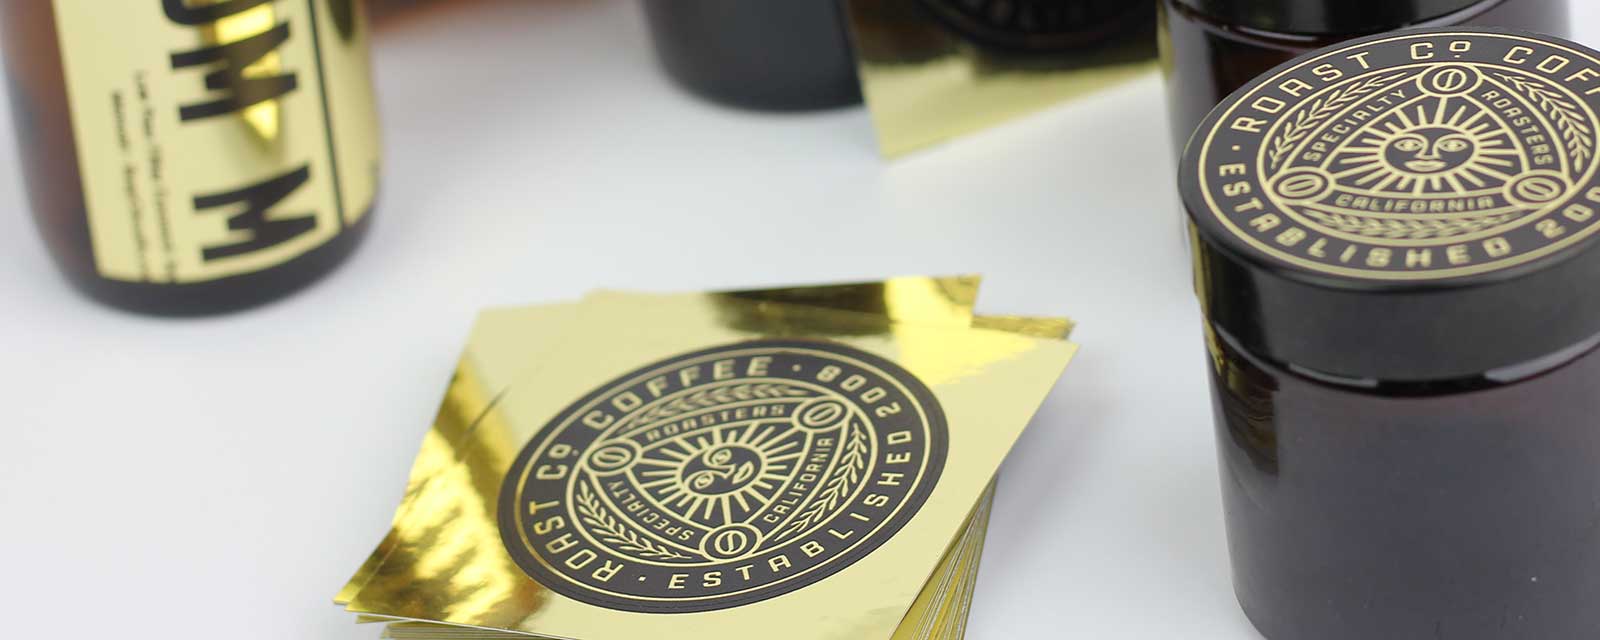 metallic gold label printing